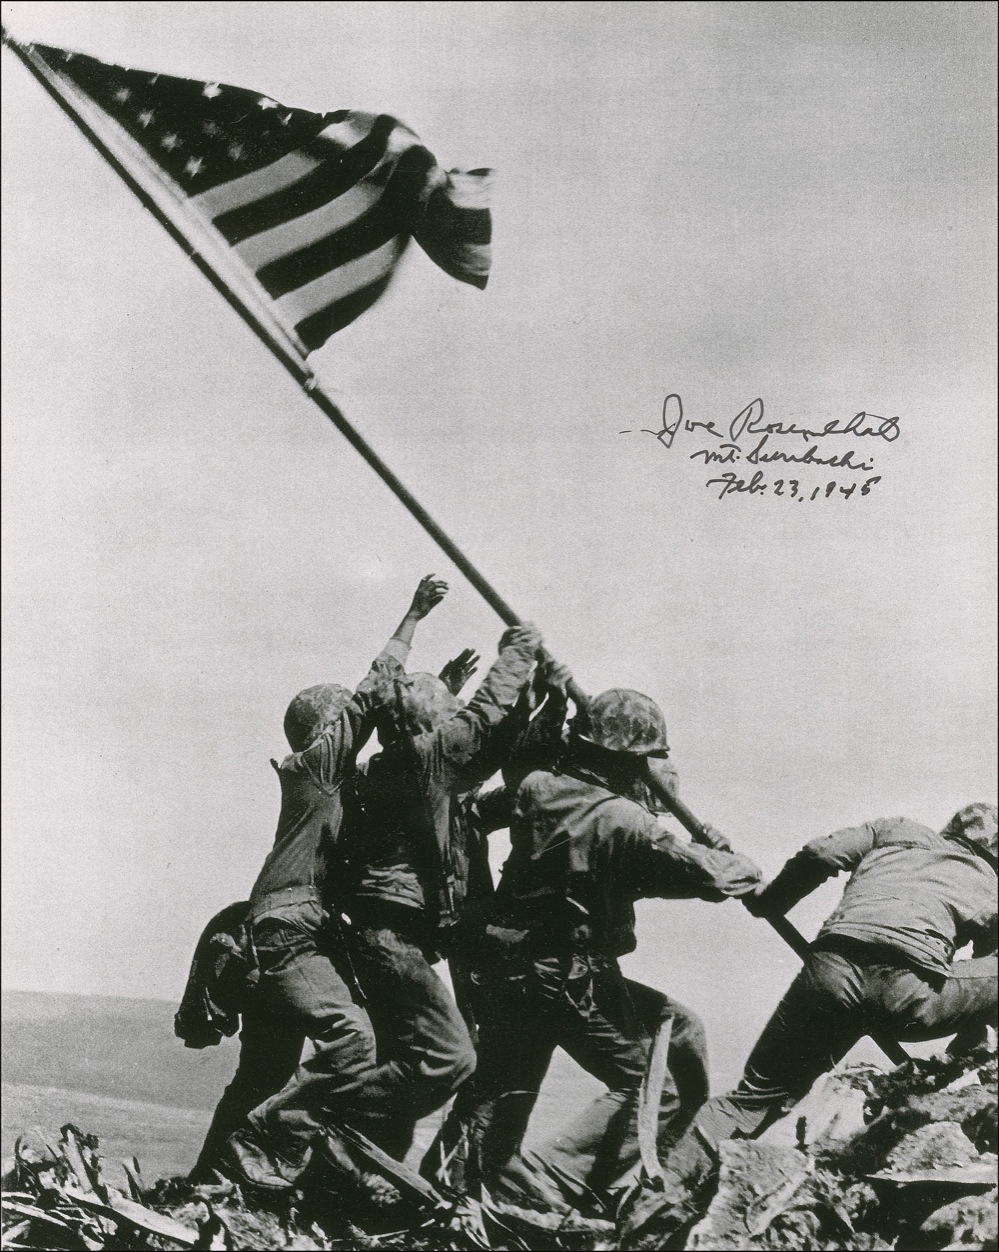 Lot #445 Iwo Jima: Joe Rosenthal